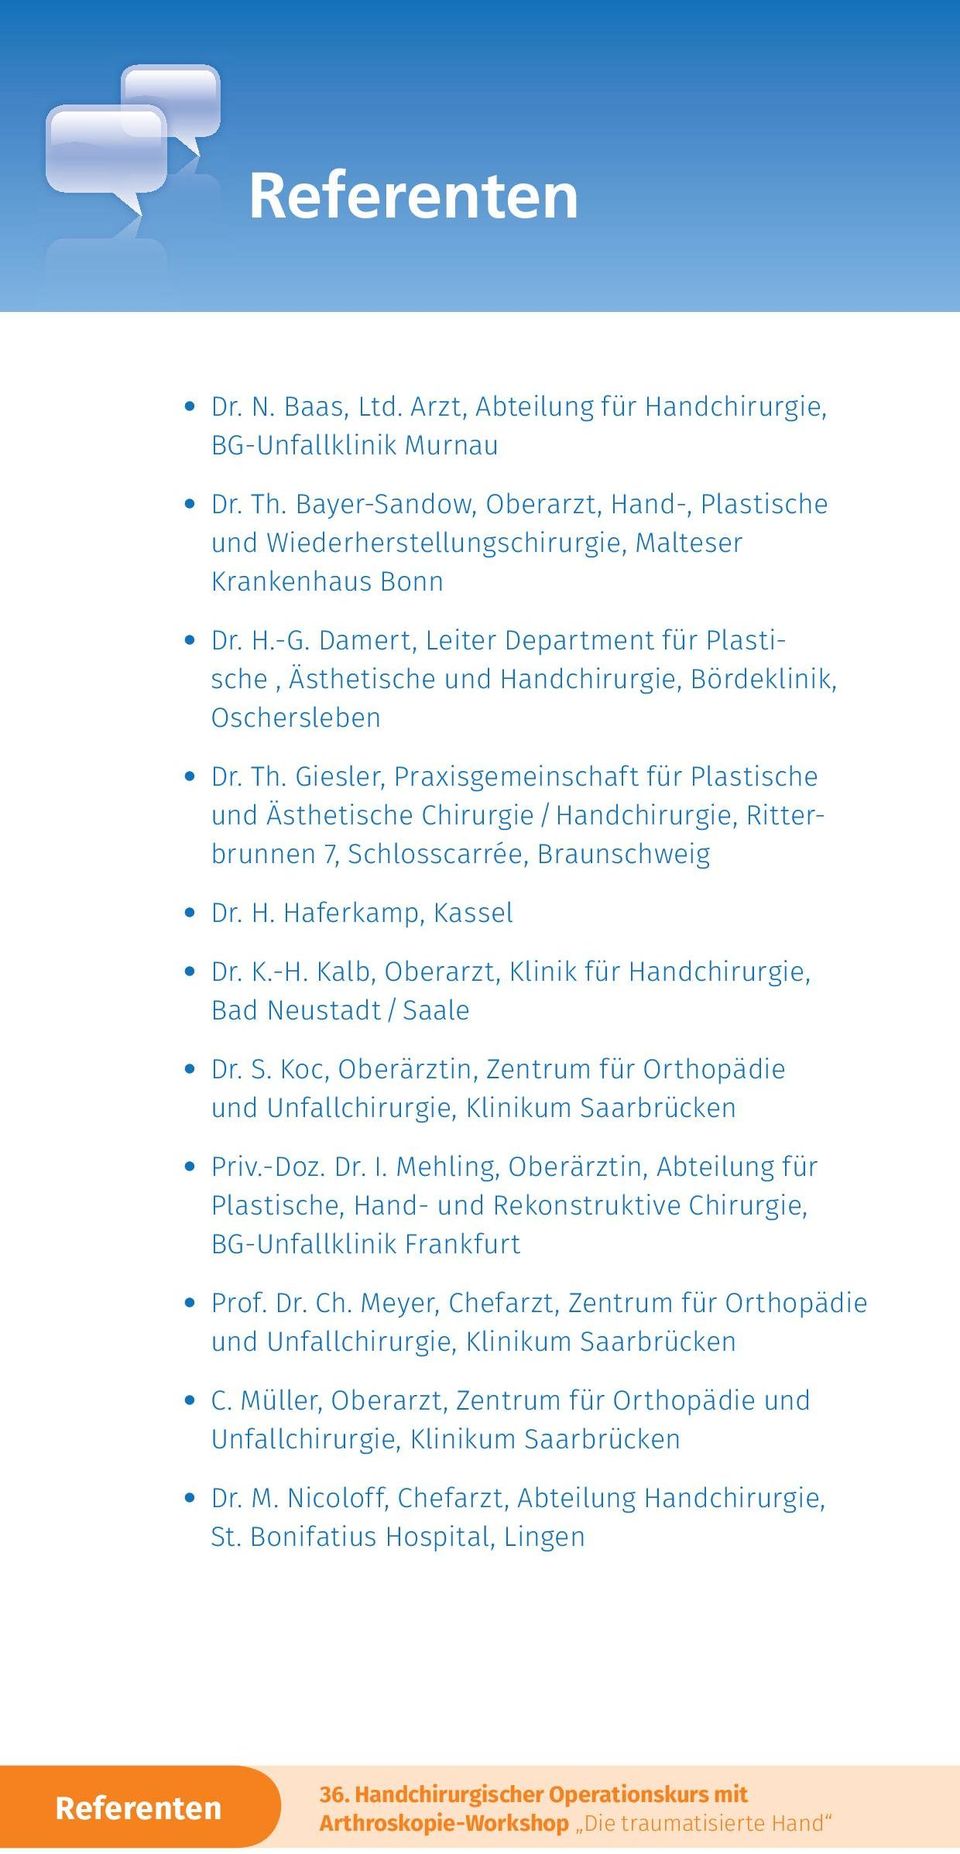 Giesler, Praxisgemeinschaft für Plastische und Ästhetische Chirurgie/Handchirurgie, Ritterbrunnen 7, Schlosscarrée, Braunschweig Dr. H. Haferkamp, Kassel Dr. K.-H.